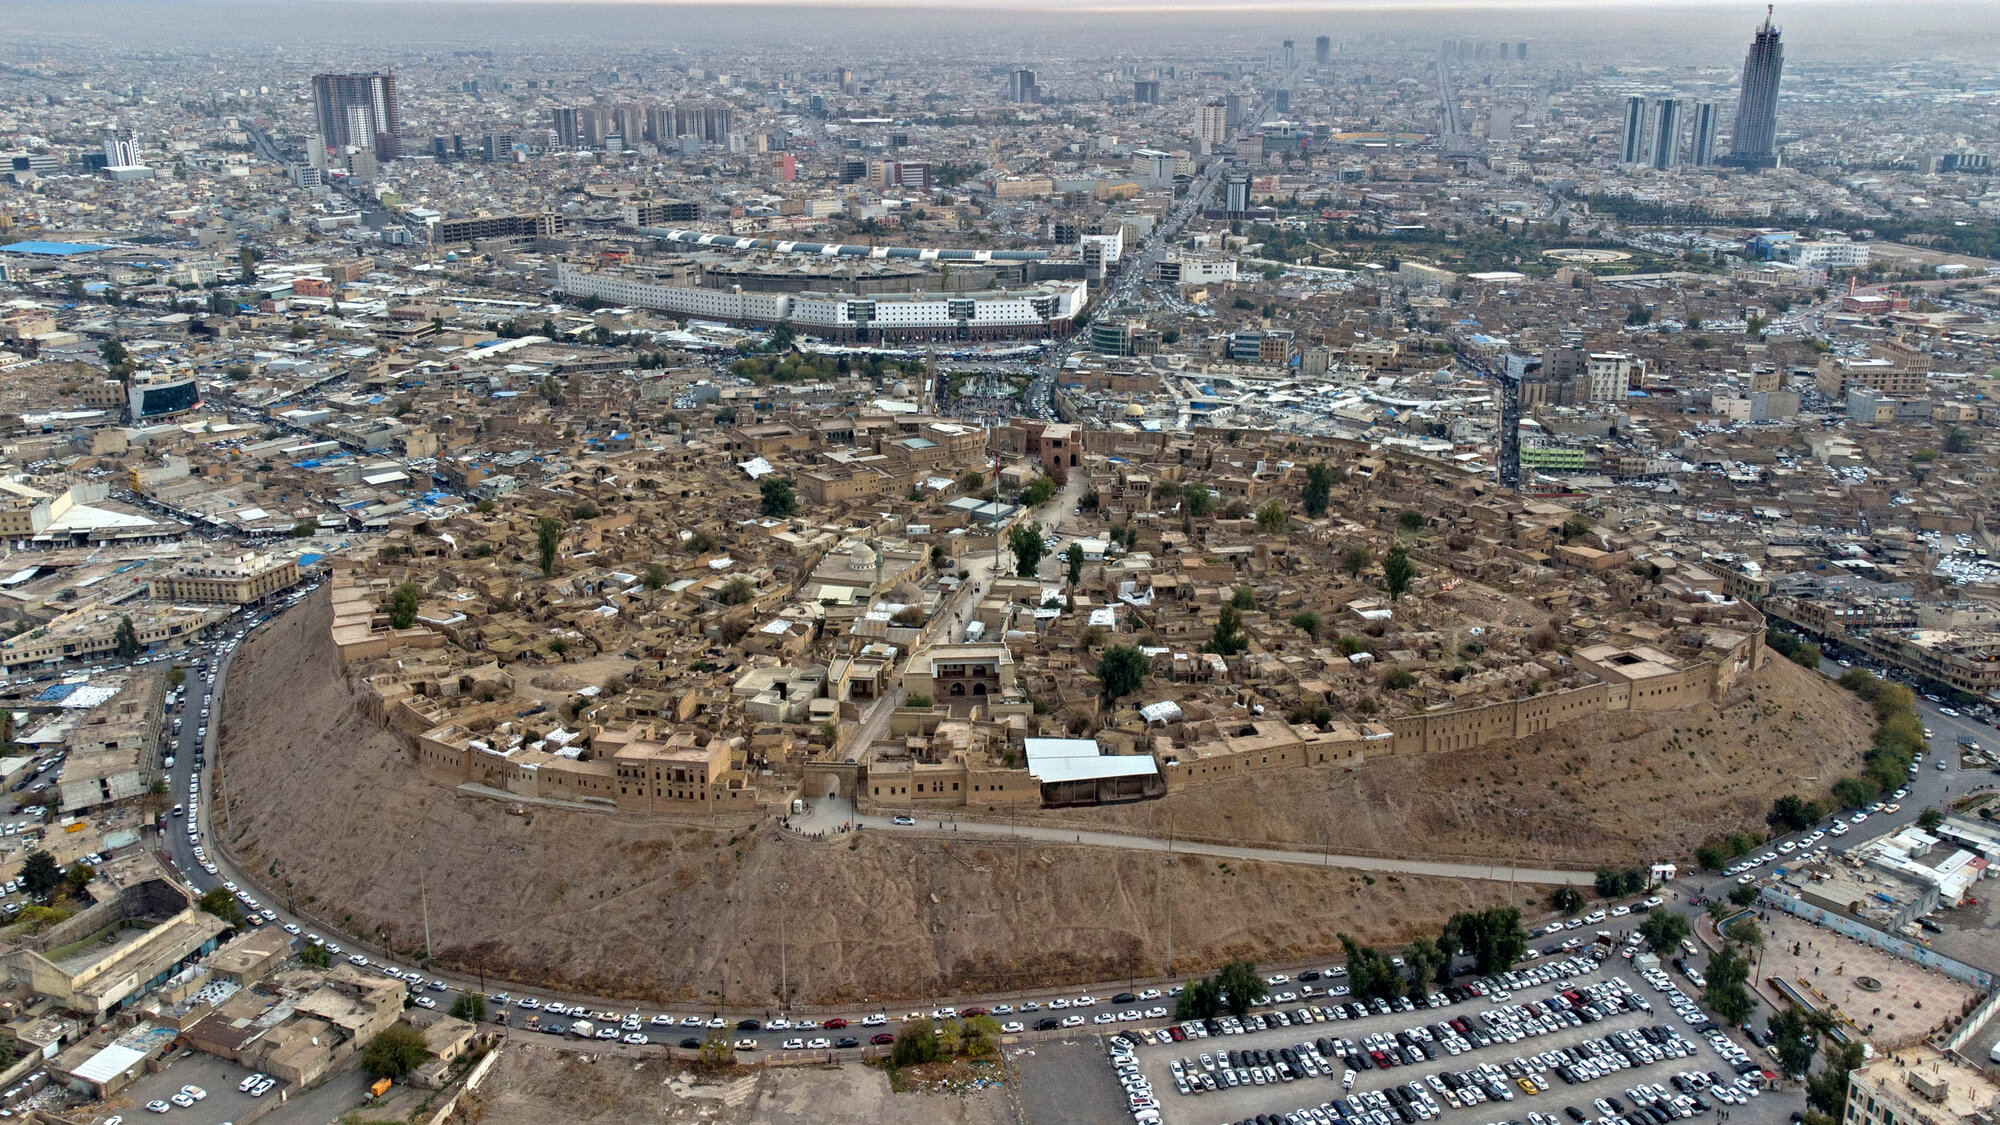 Erbil, Erbil Citadel, Iraq